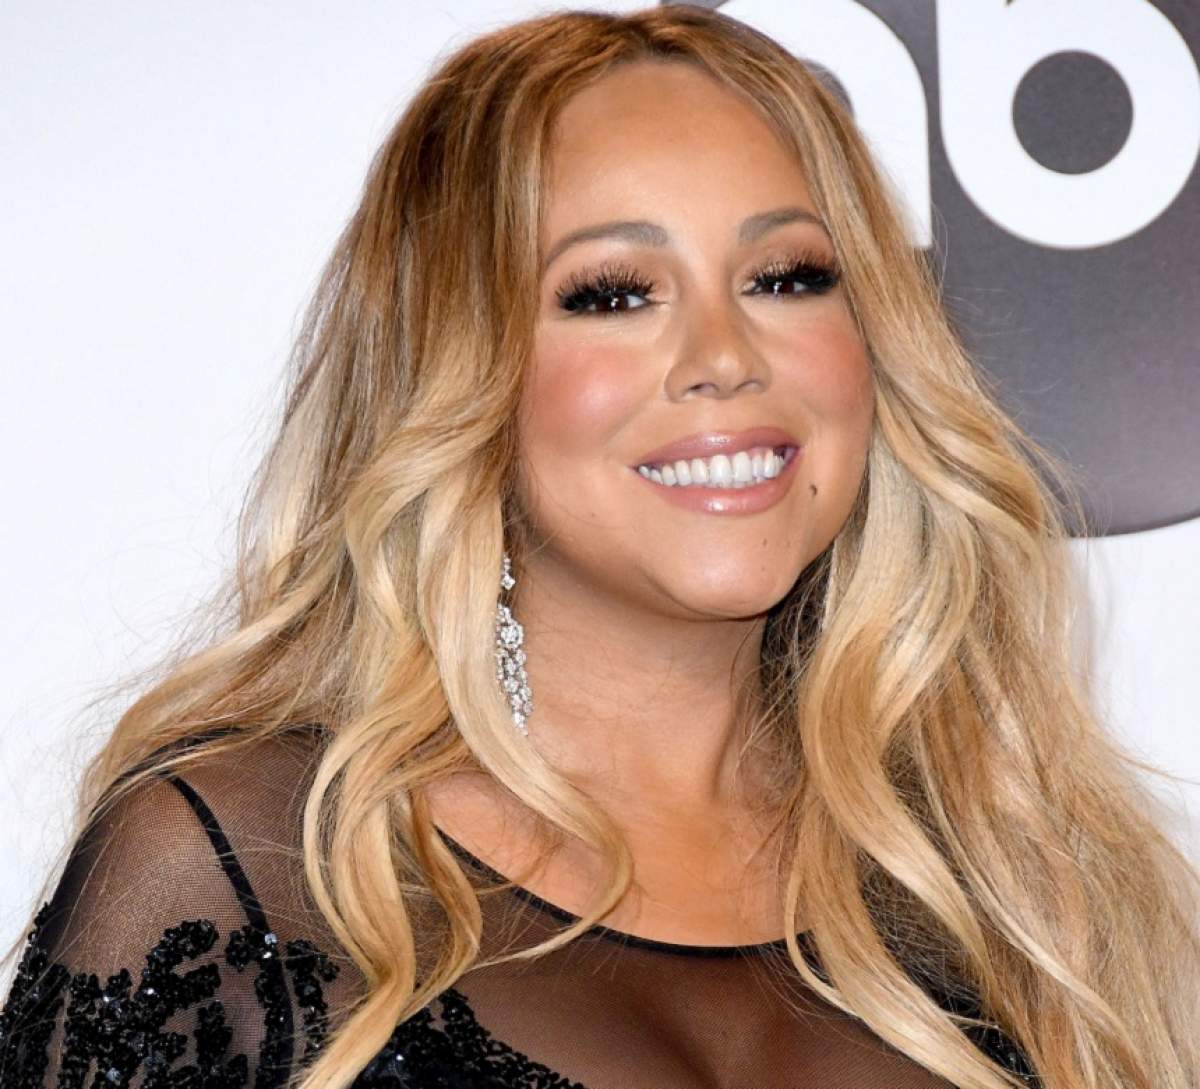 FOTO / Are aproape 50 de ani, dar e o bombă sexy! Mariah Carey s-a afișat la un eveniment cu lenjeria intimă la vedere